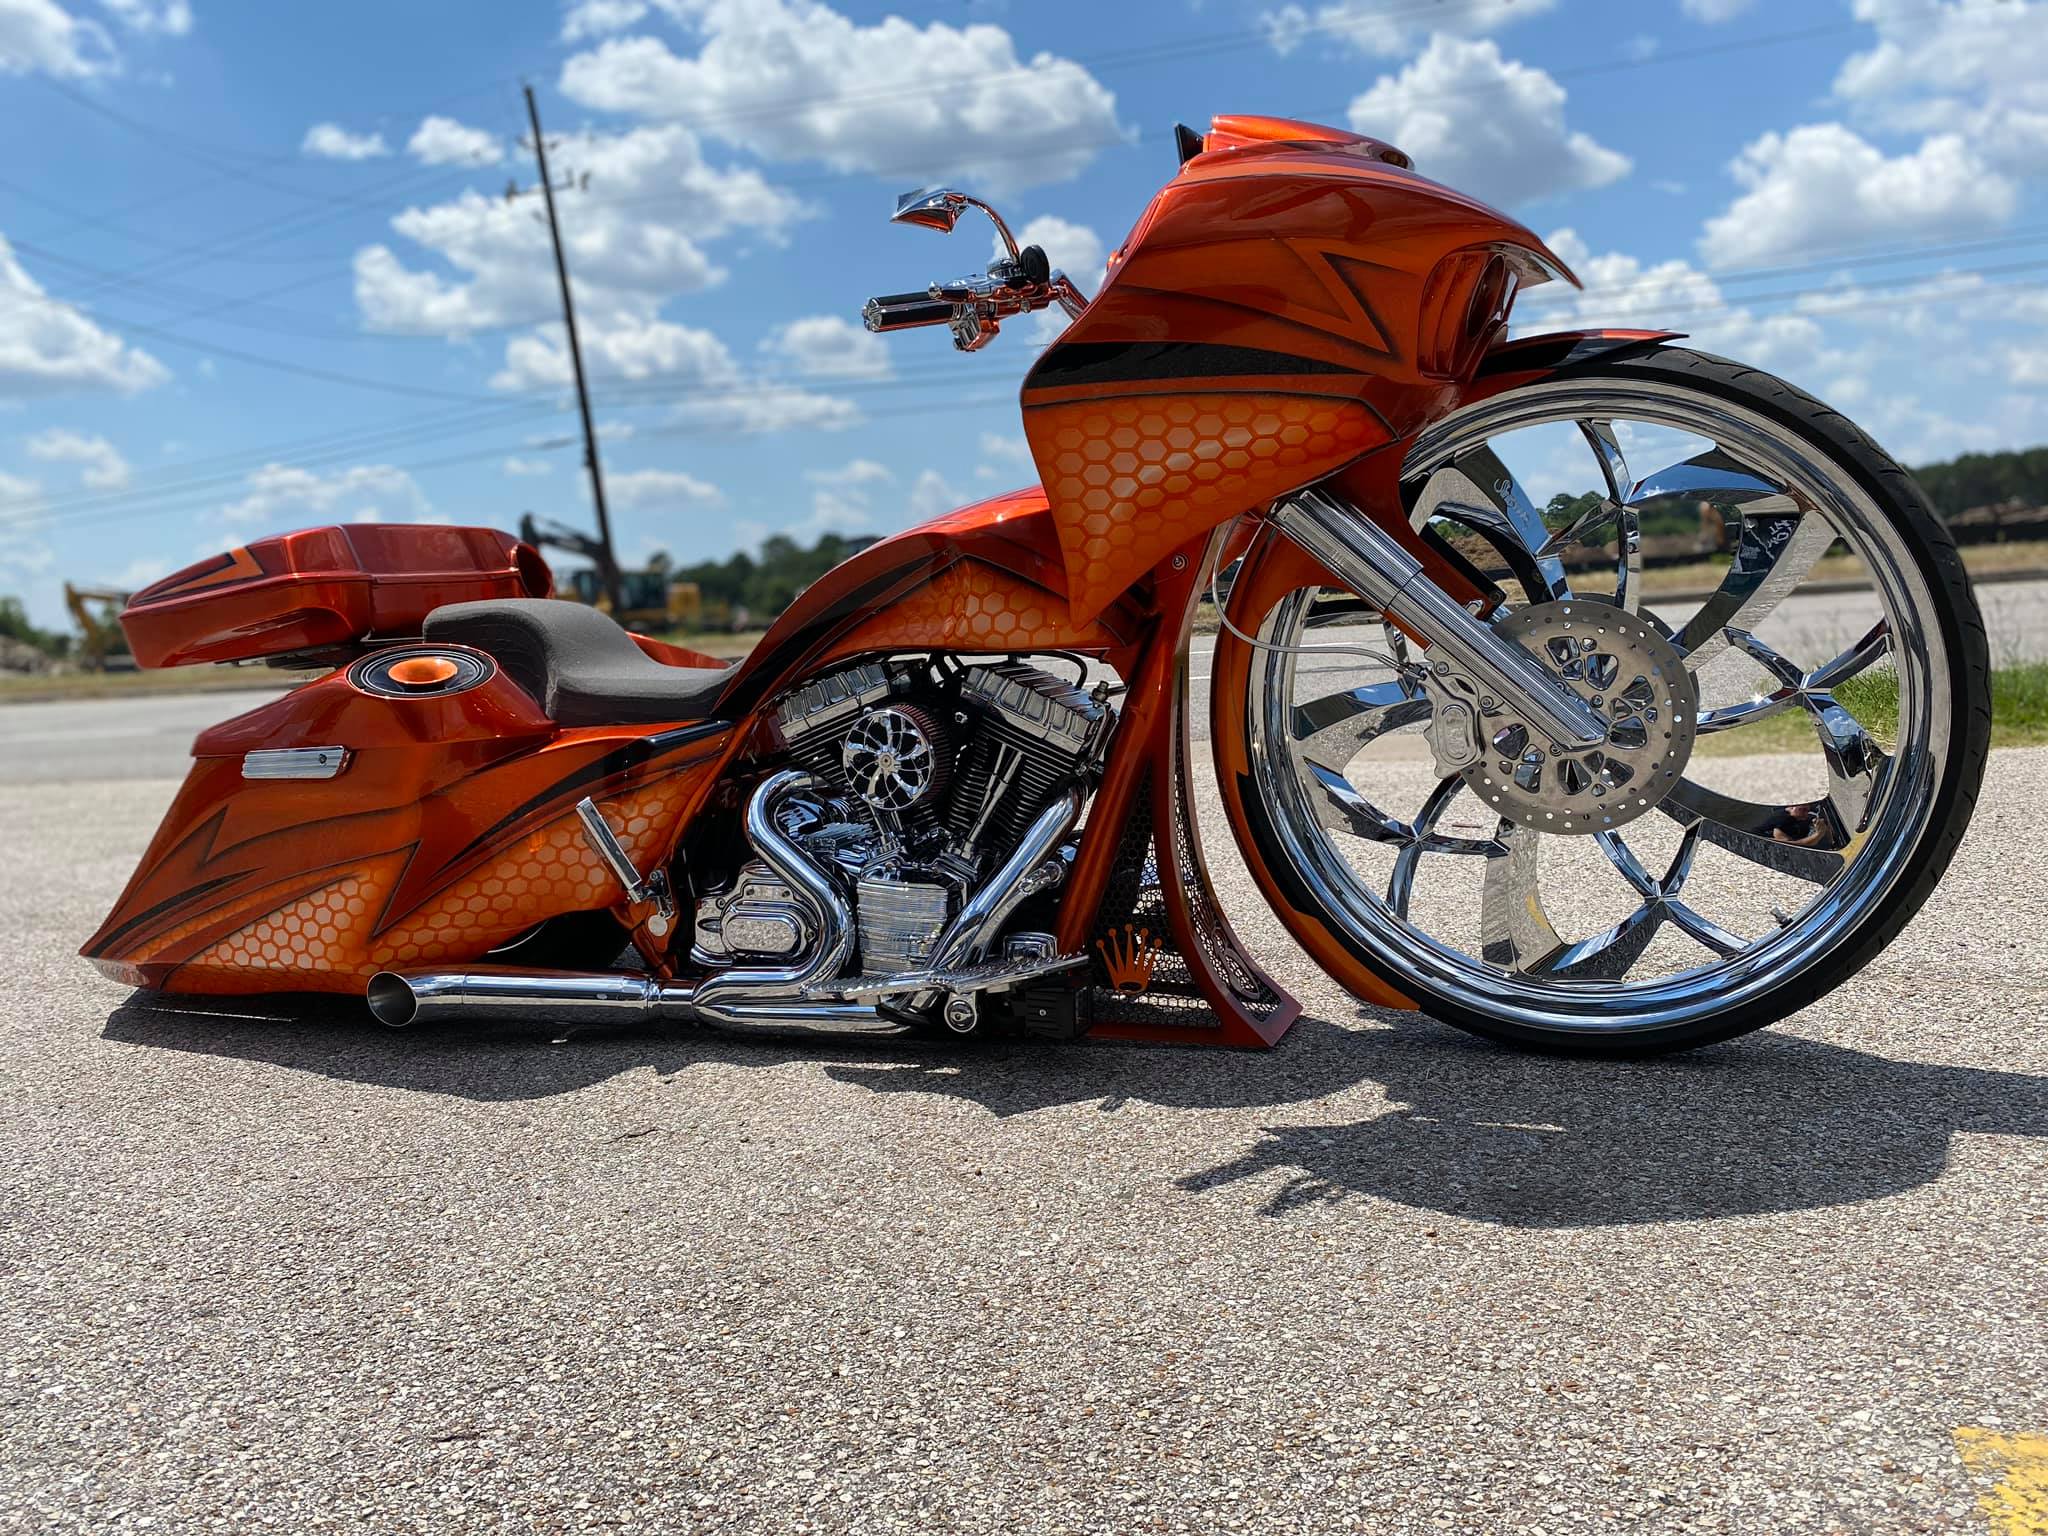 Diabolical Custom Motorcycle Wheel - Custom Motorcycle Rims